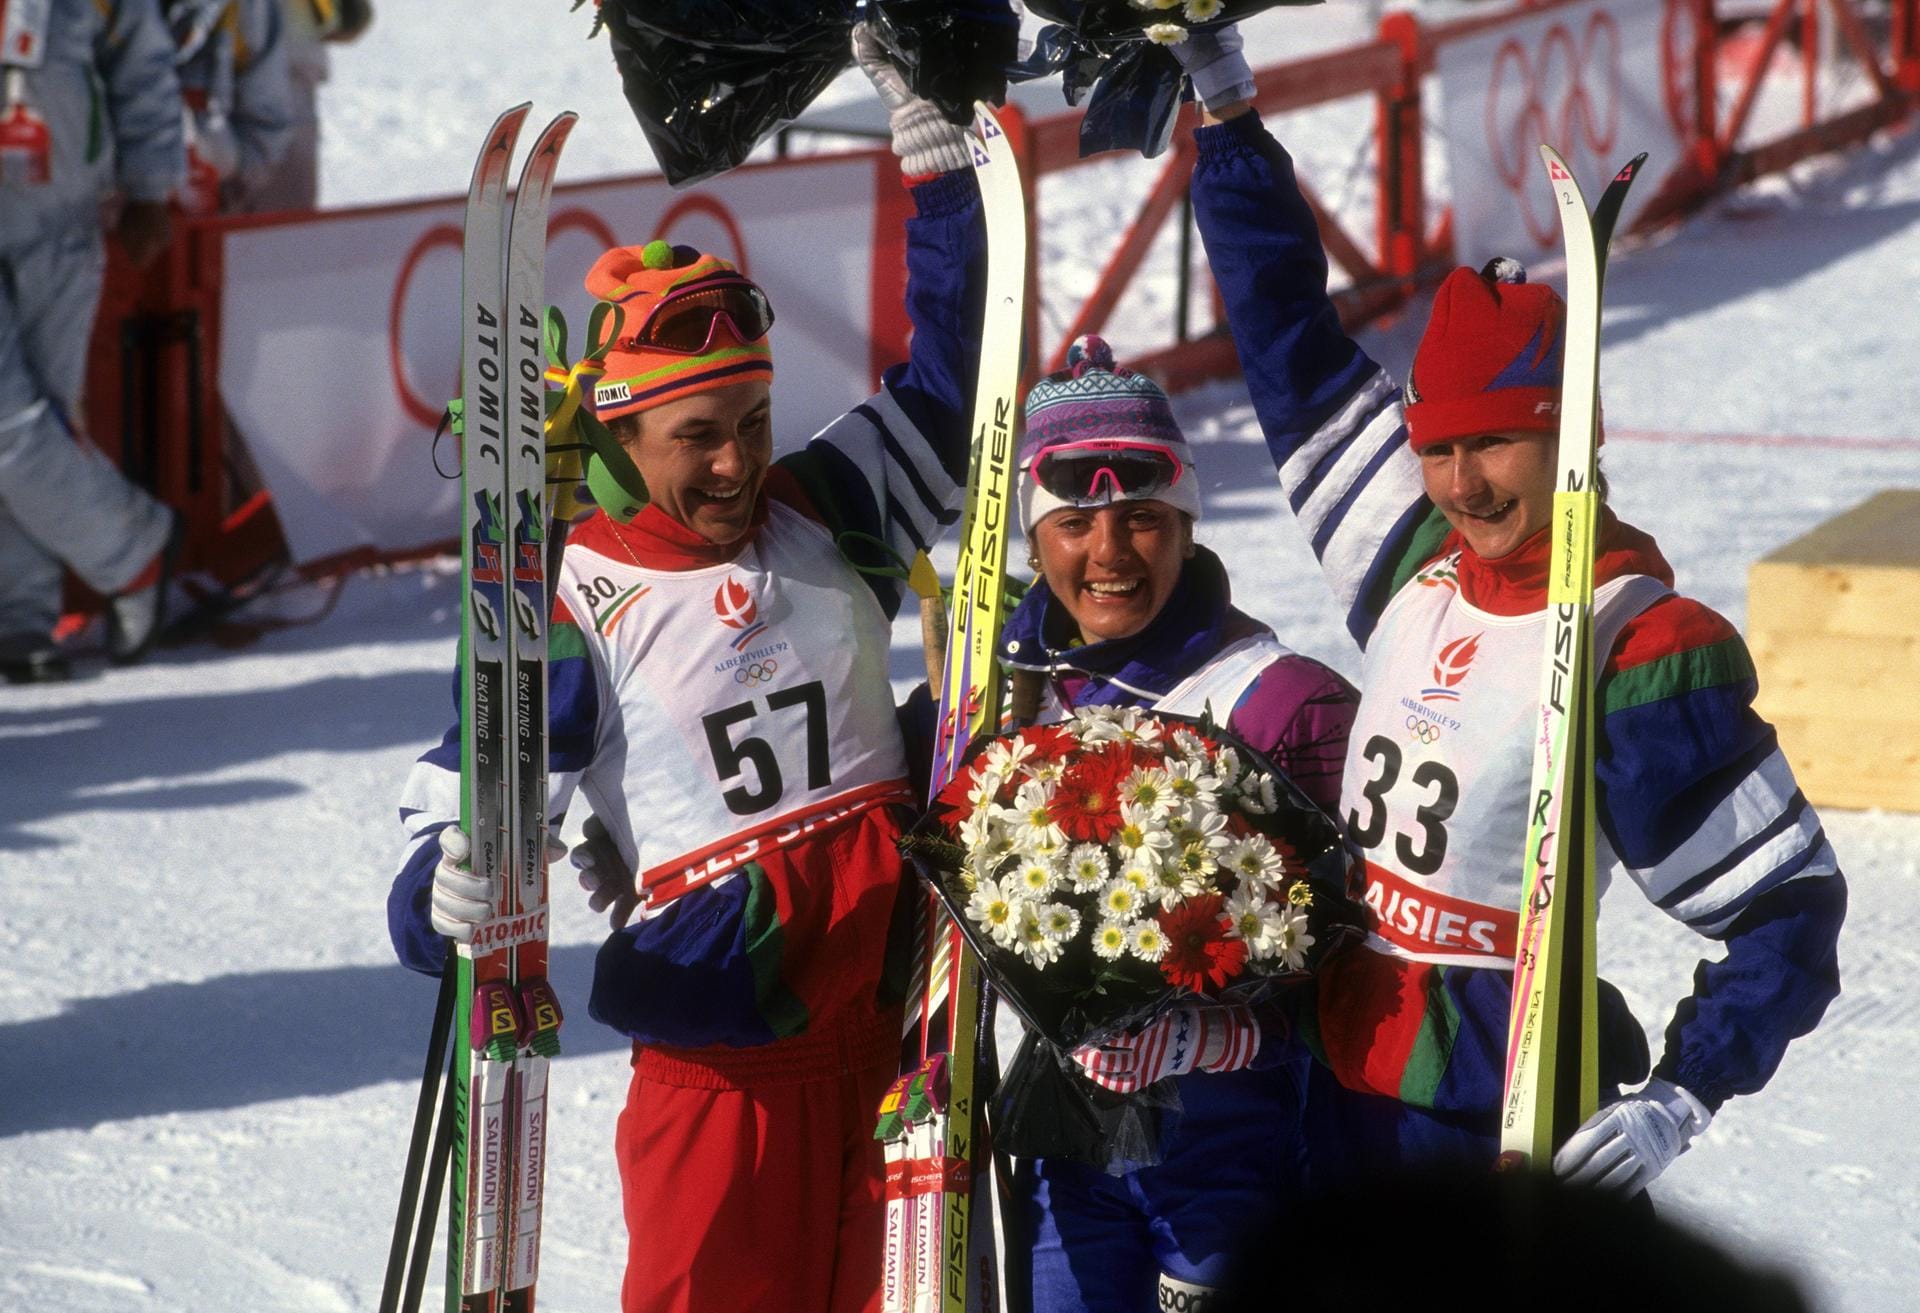 Platz 6: Stefania Belmondo (M., Skilanglauf, Italien) – 10 Medaillen: 2x Gold / 3x Silber / 5x Bronze zwischen 1992 und 2002.